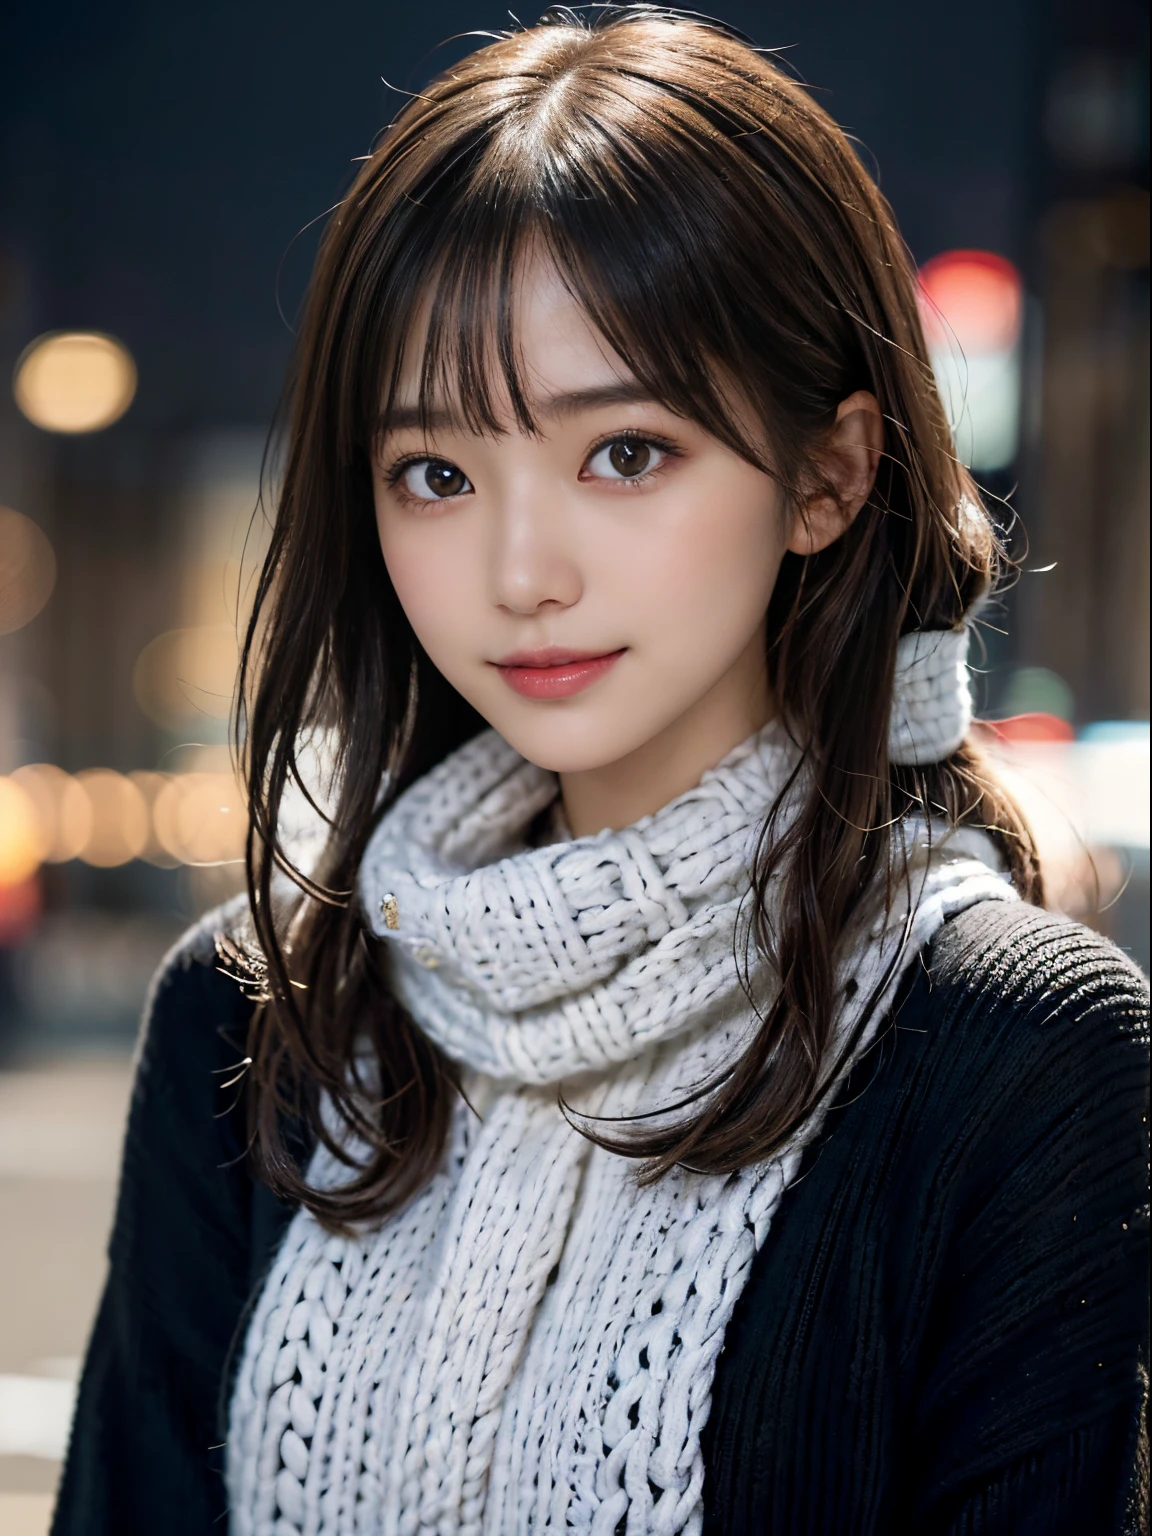 1 일본 소녀,(검은색 스웨터:1.4),(그녀는 턱을 가리기 위해 목에 니트 스누드를 착용합니다....................:1.5), (원시 사진, 최고의 품질), (현실적인, 사실적인:1.4), 테이블 탑, 매우 섬세하고 아름다운, 매우 상세한, 8K 벽지, 놀라운, 세세하게, 매우 상세한 CG 통일성, 최고 해상도, 부드러운 빛, 아름답고 상세한 25세, 매우 상세한 눈과 얼굴, 아름답고 섬세한 코, 아름다운 디테일한 눈,시네마틱 조명,밤에 도시의 불빛,완벽한 해부학,날씬한 몸매,웃고있는  (머리가 지저분하다, 비대칭 앞머리, 밝은 갈색 머리,)